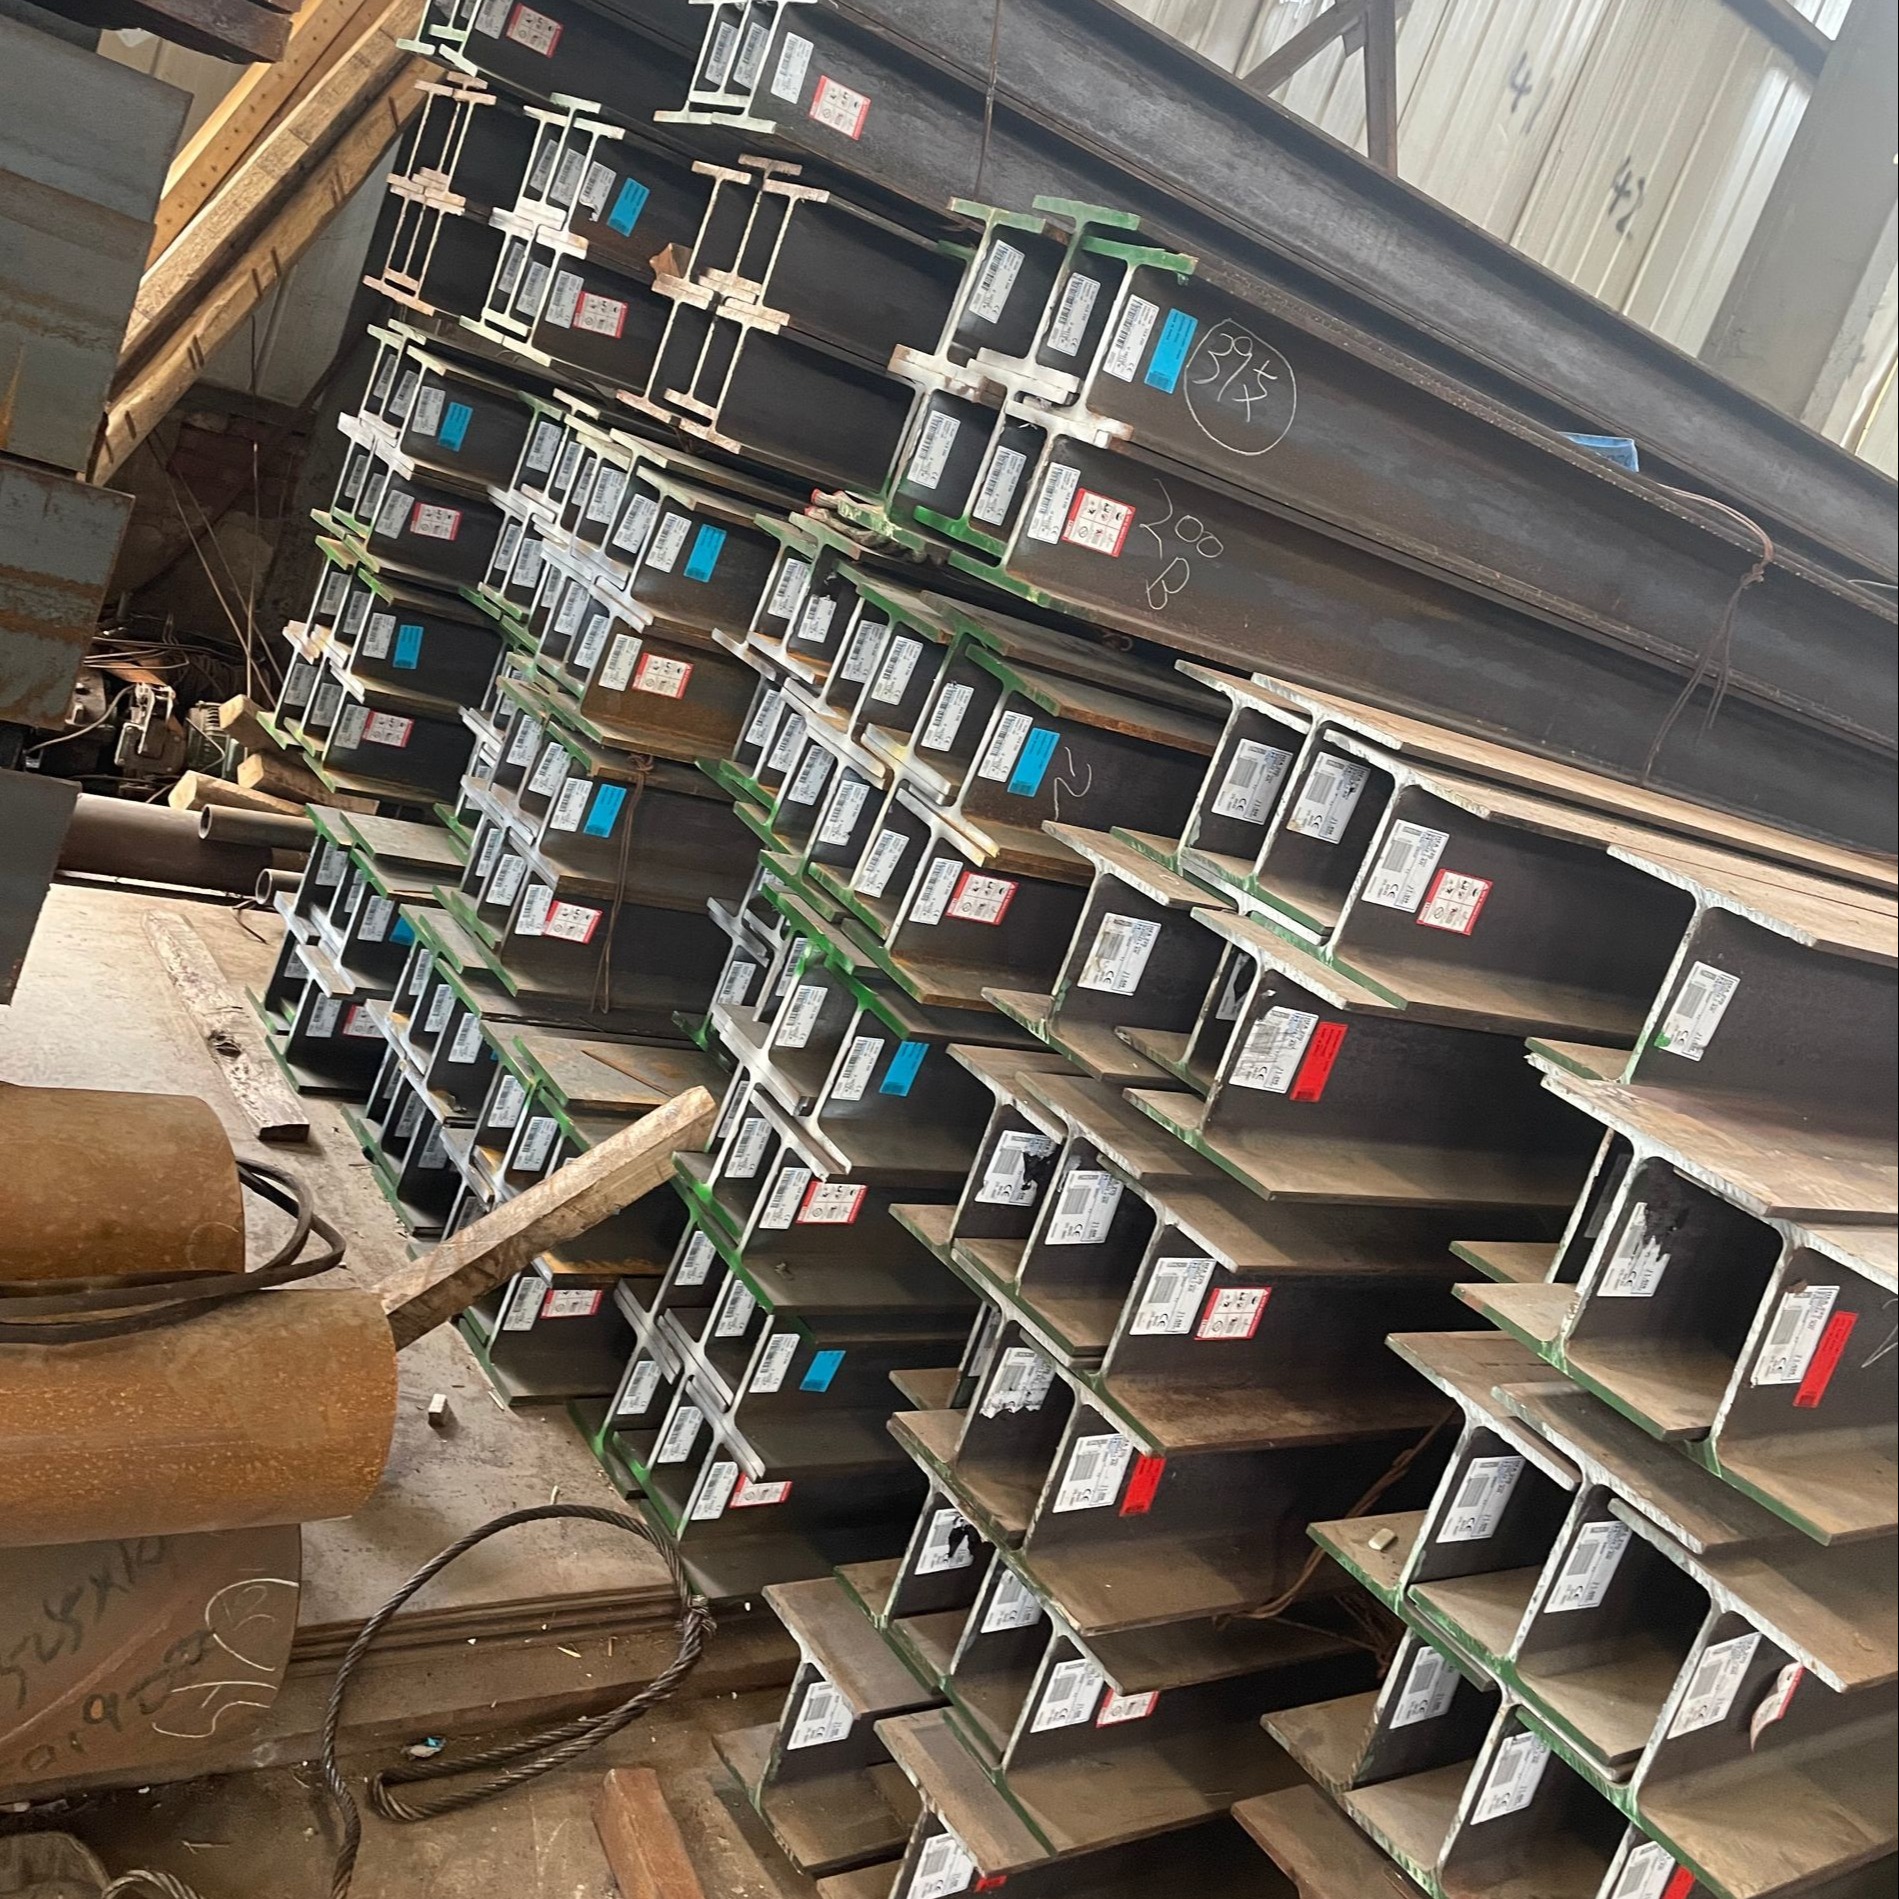 150UC澳标H型钢   澳标H型钢澳门钢结构项目使用  低价出售澳标钢材